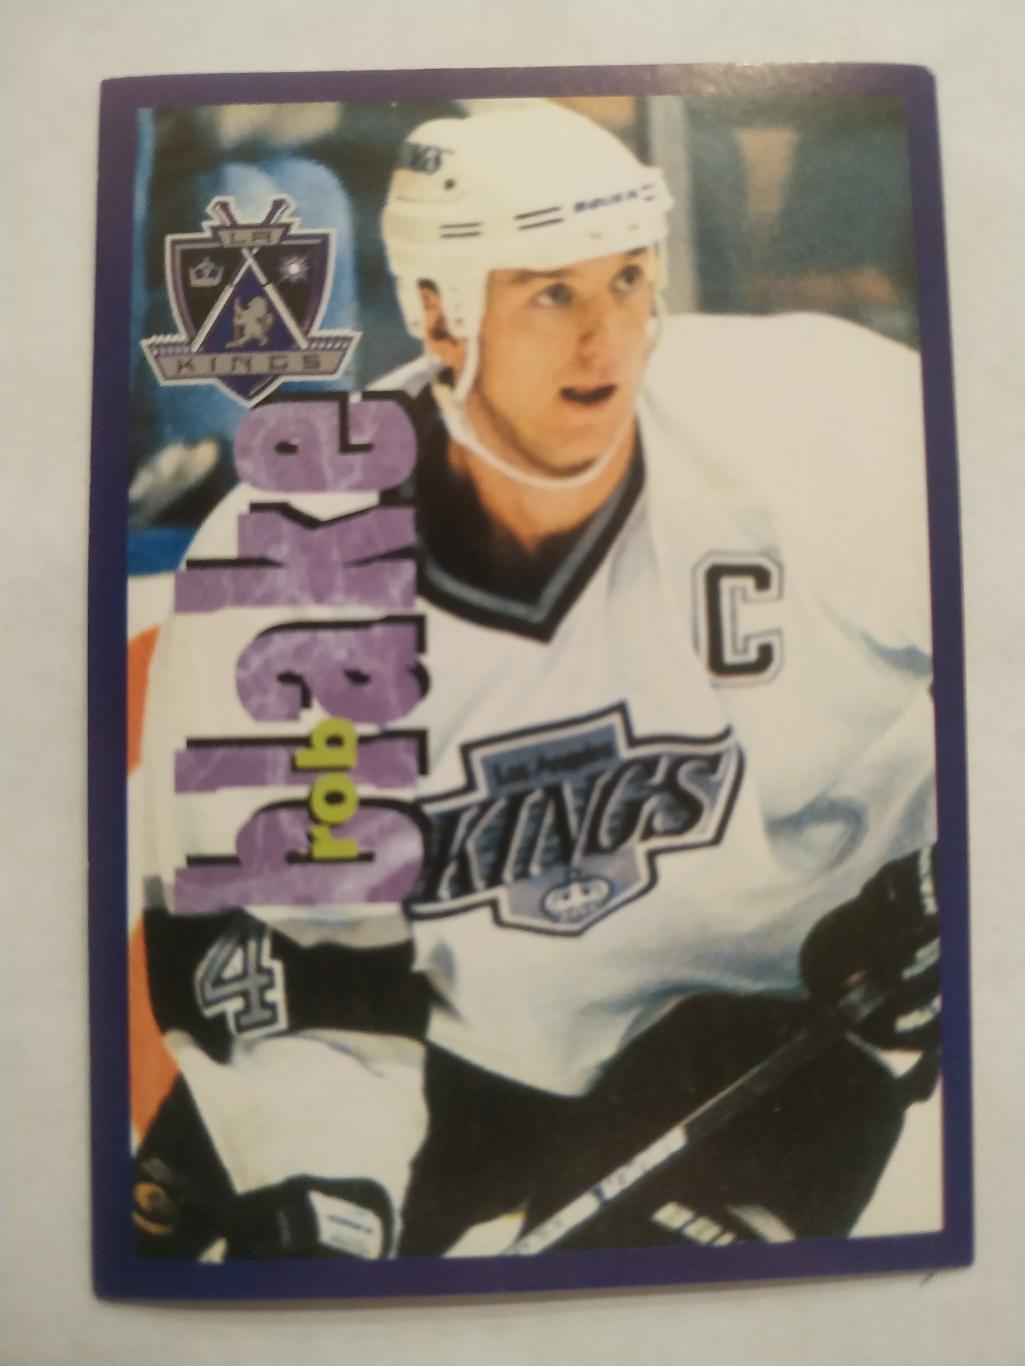 ХОККЕЙ НАКЛЕЙКА НХЛ ПАНИНИ 1998-1999 КОЛЛЕКЦИЯ NHL PANINI ROB BLAKE #205